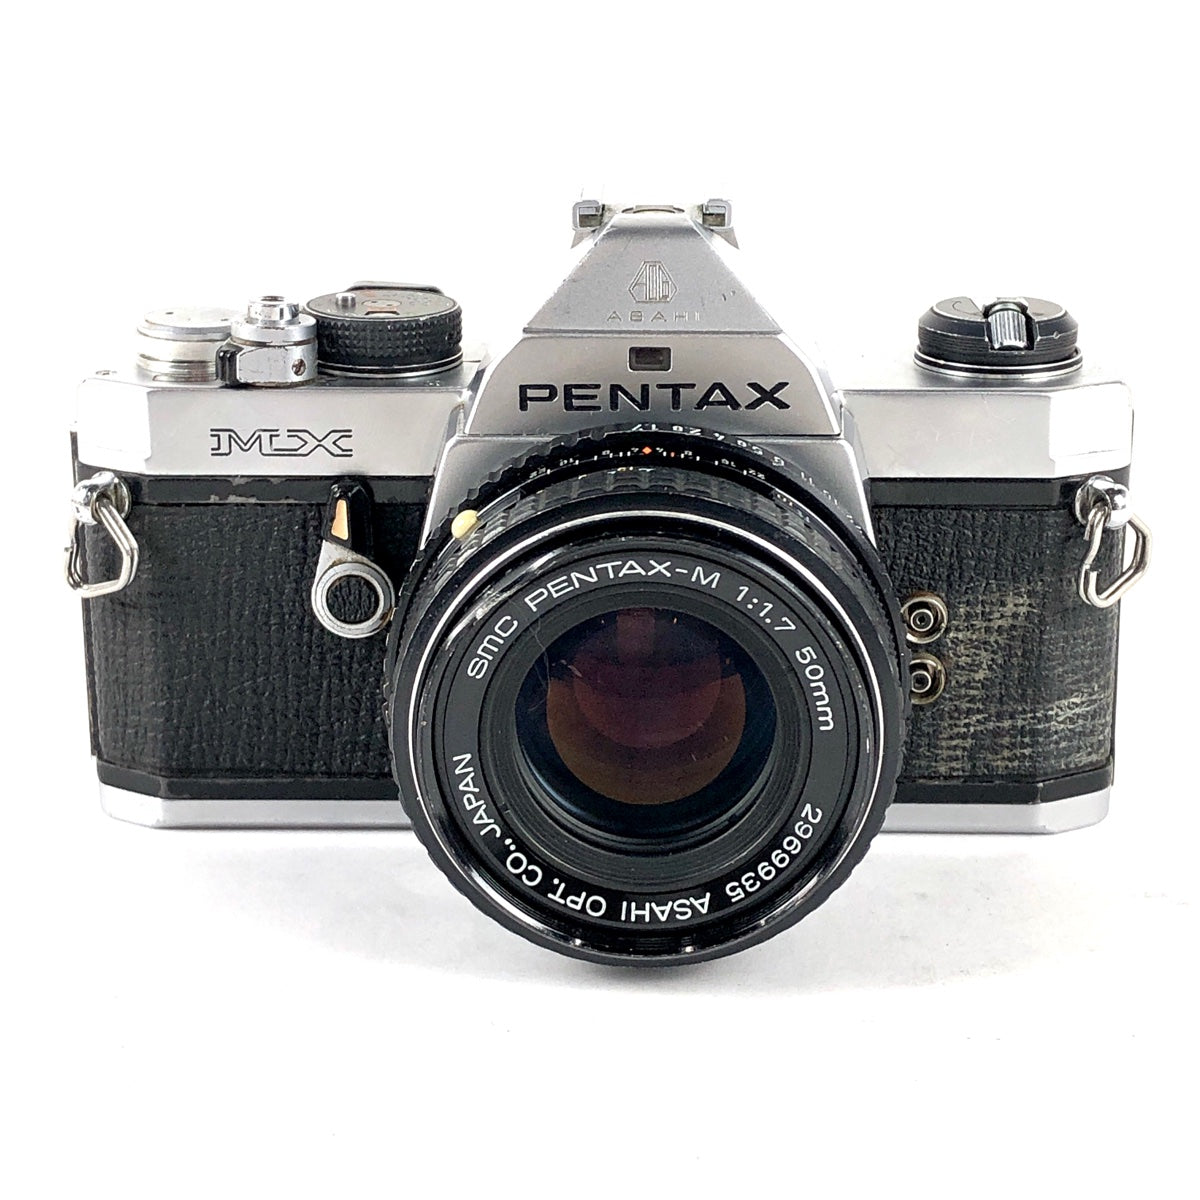 フィルム一眼レフカメラ PENTAX MX + レンズセット - 家電